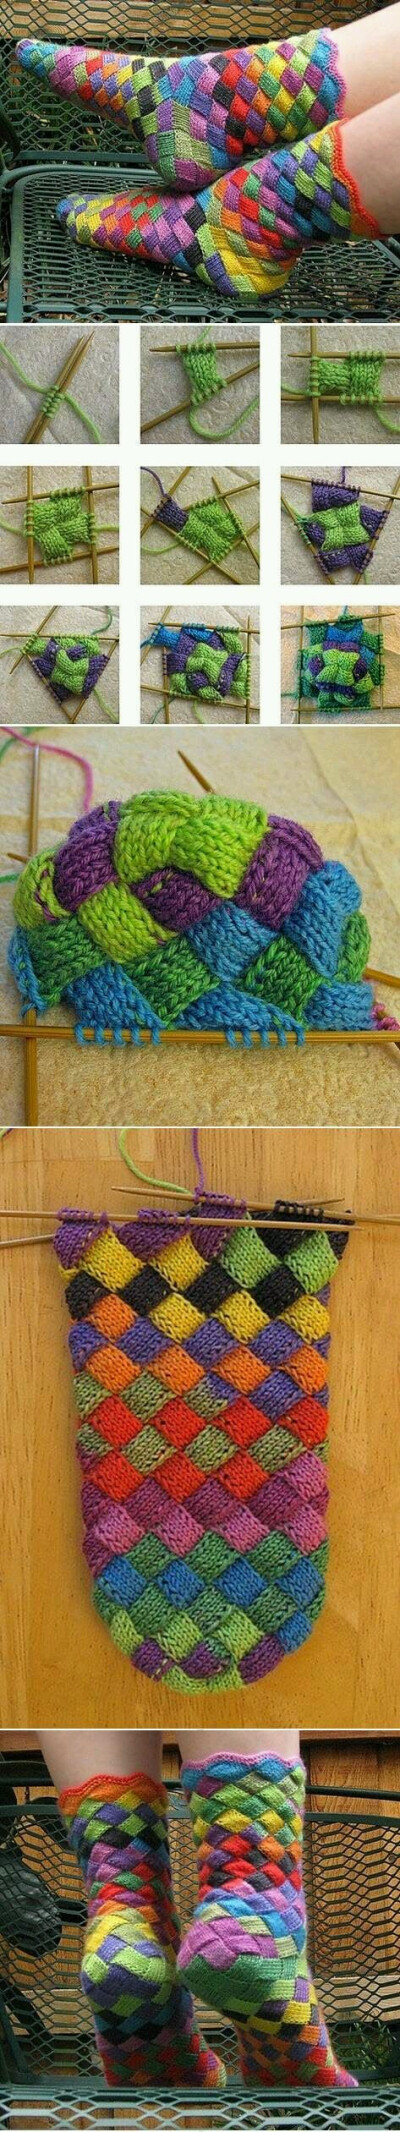 彩虹袜子编织